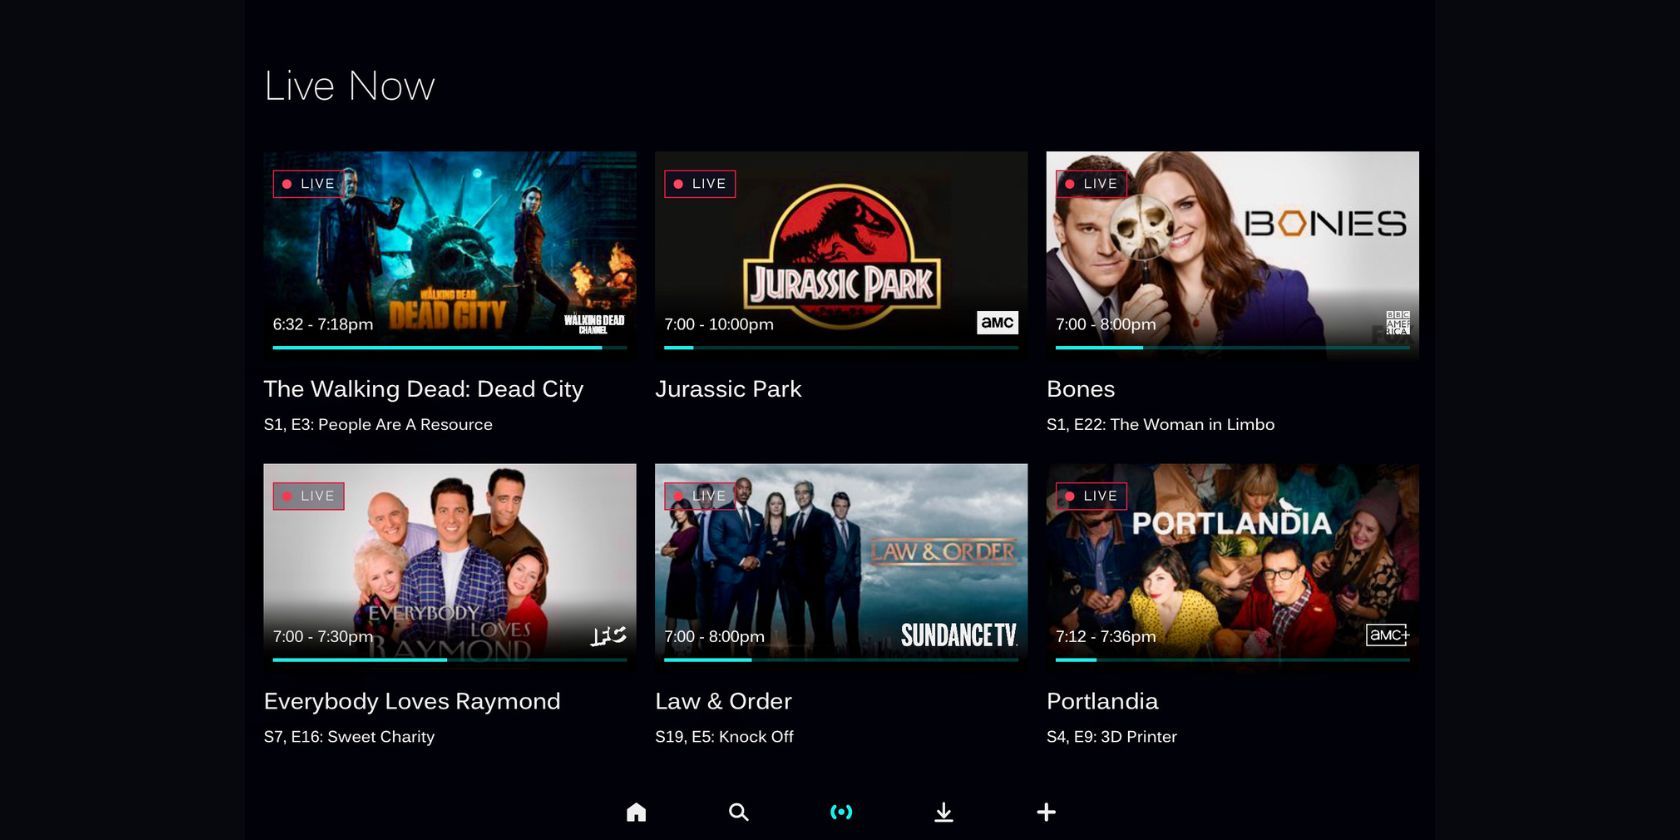 Stream live TV shows through the AMC+ app